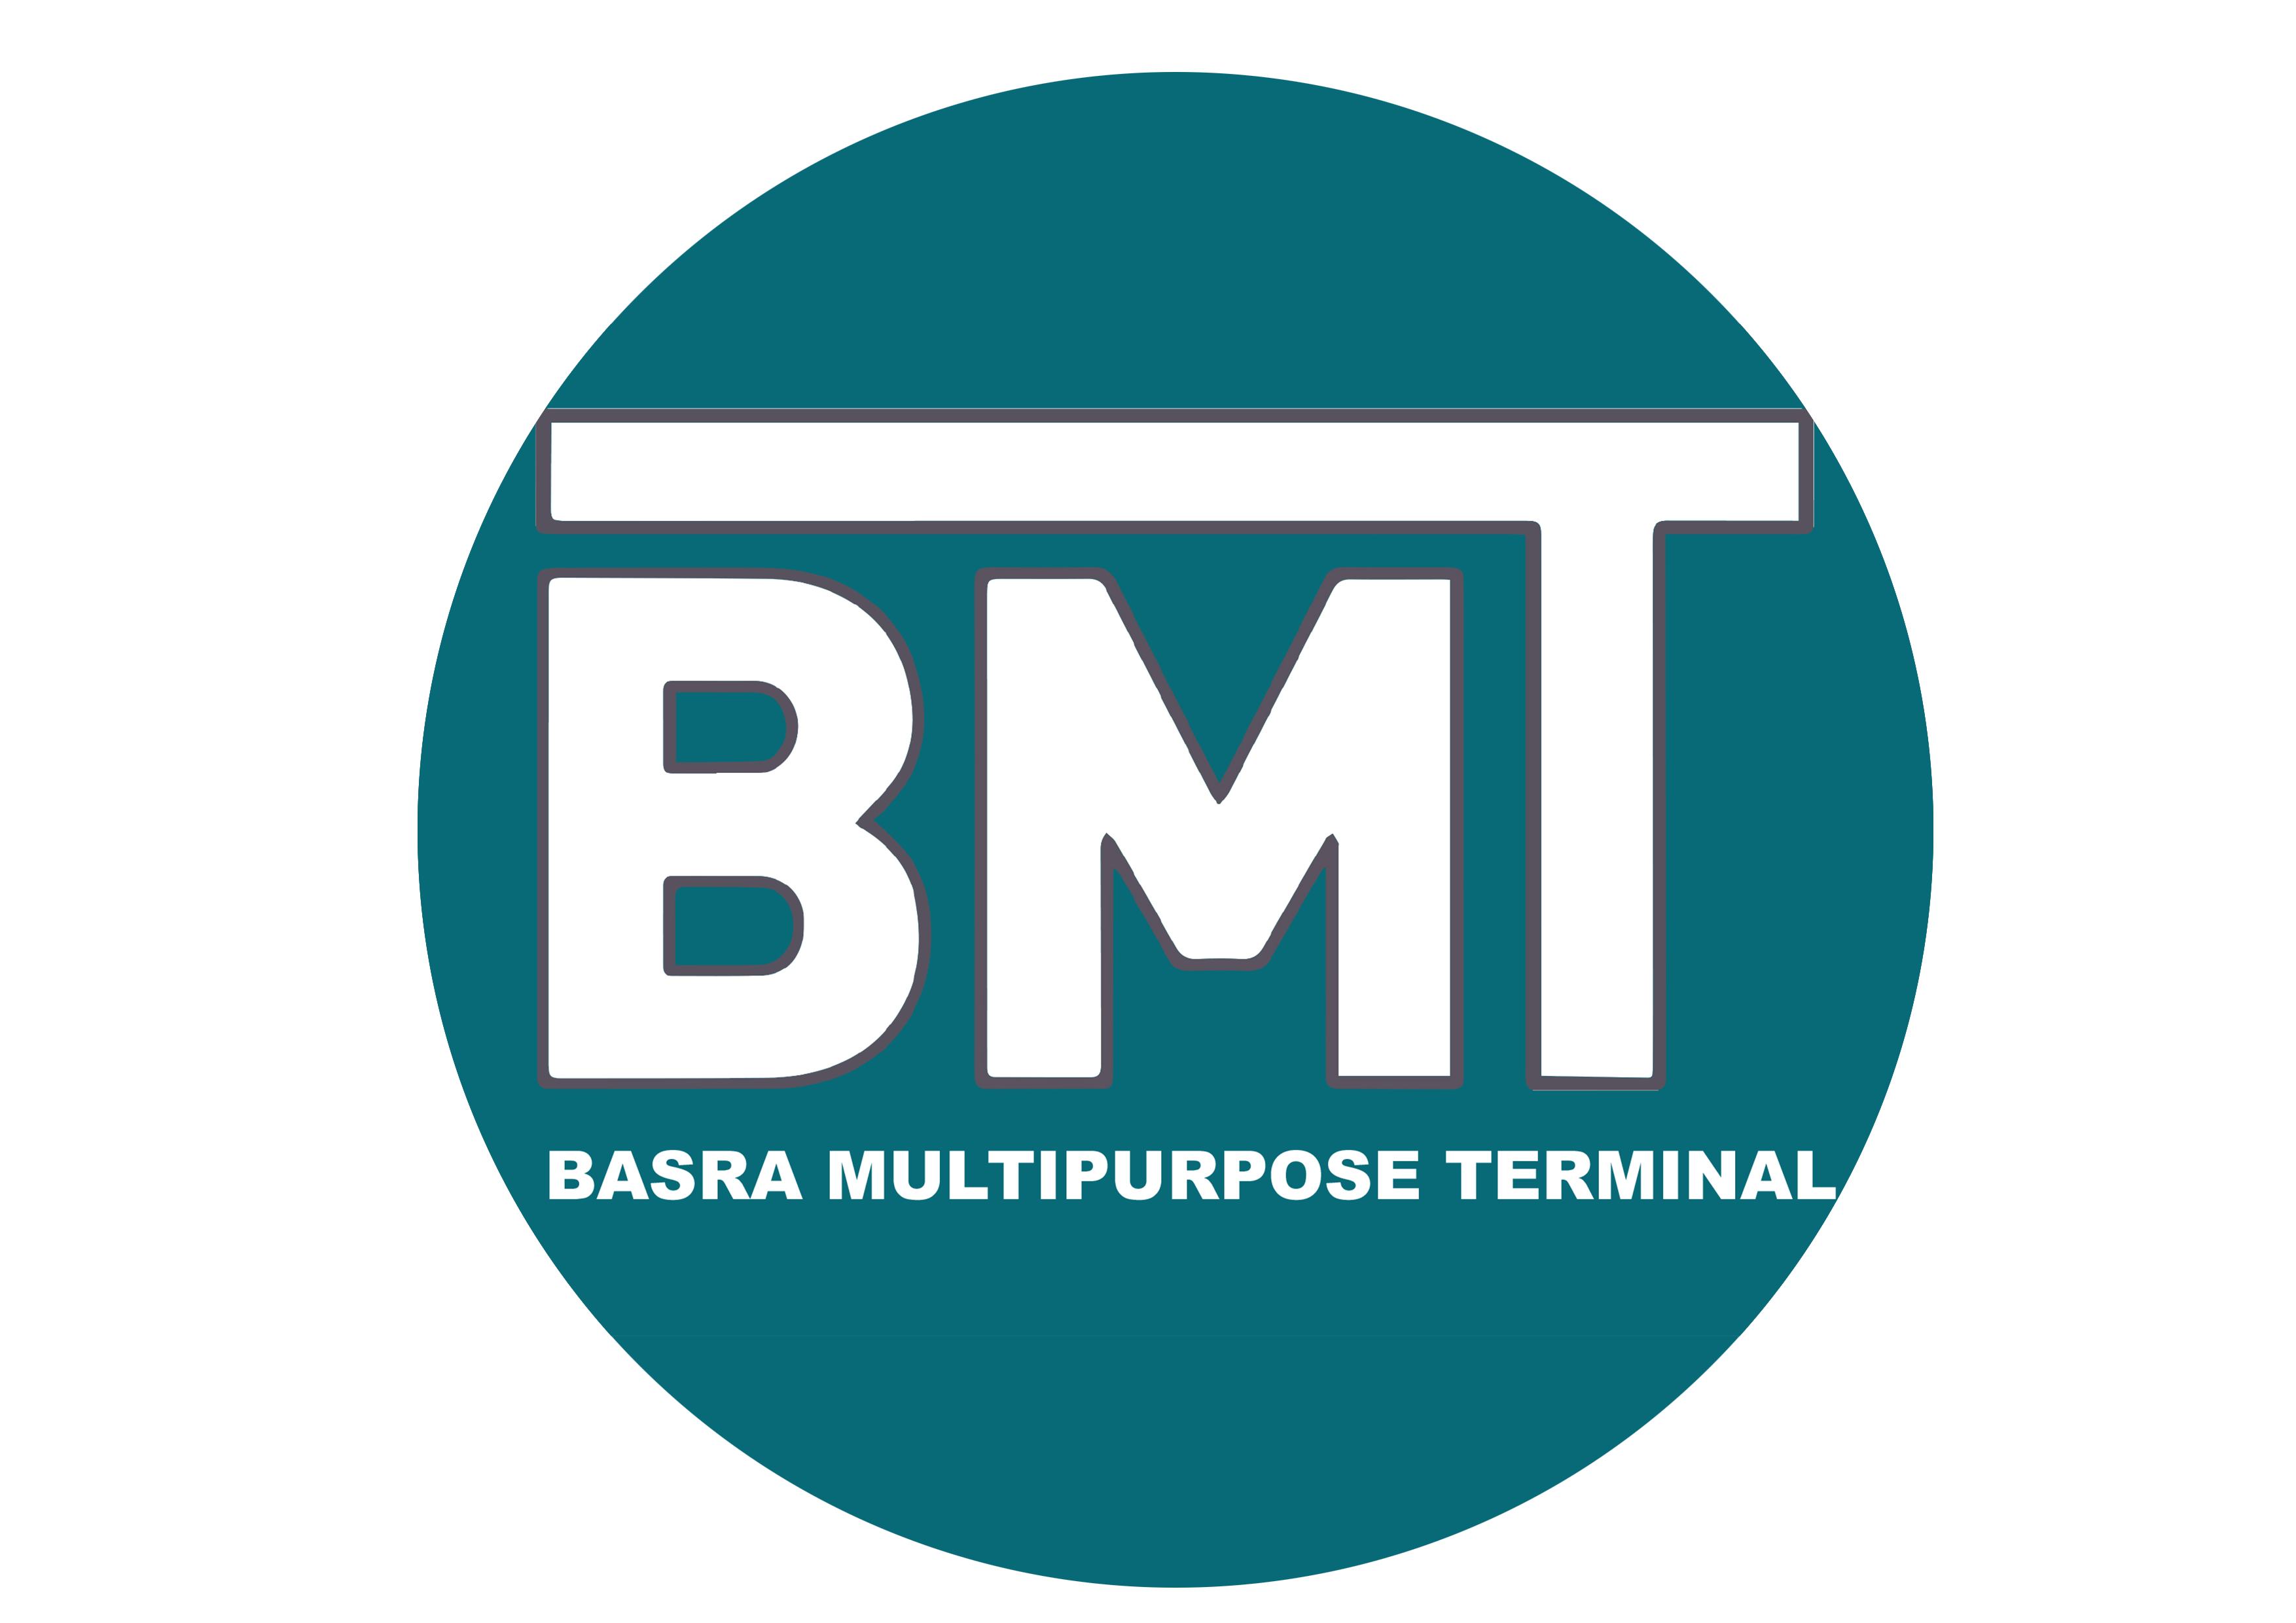 BMT (Basra Multipurpose Terminal)